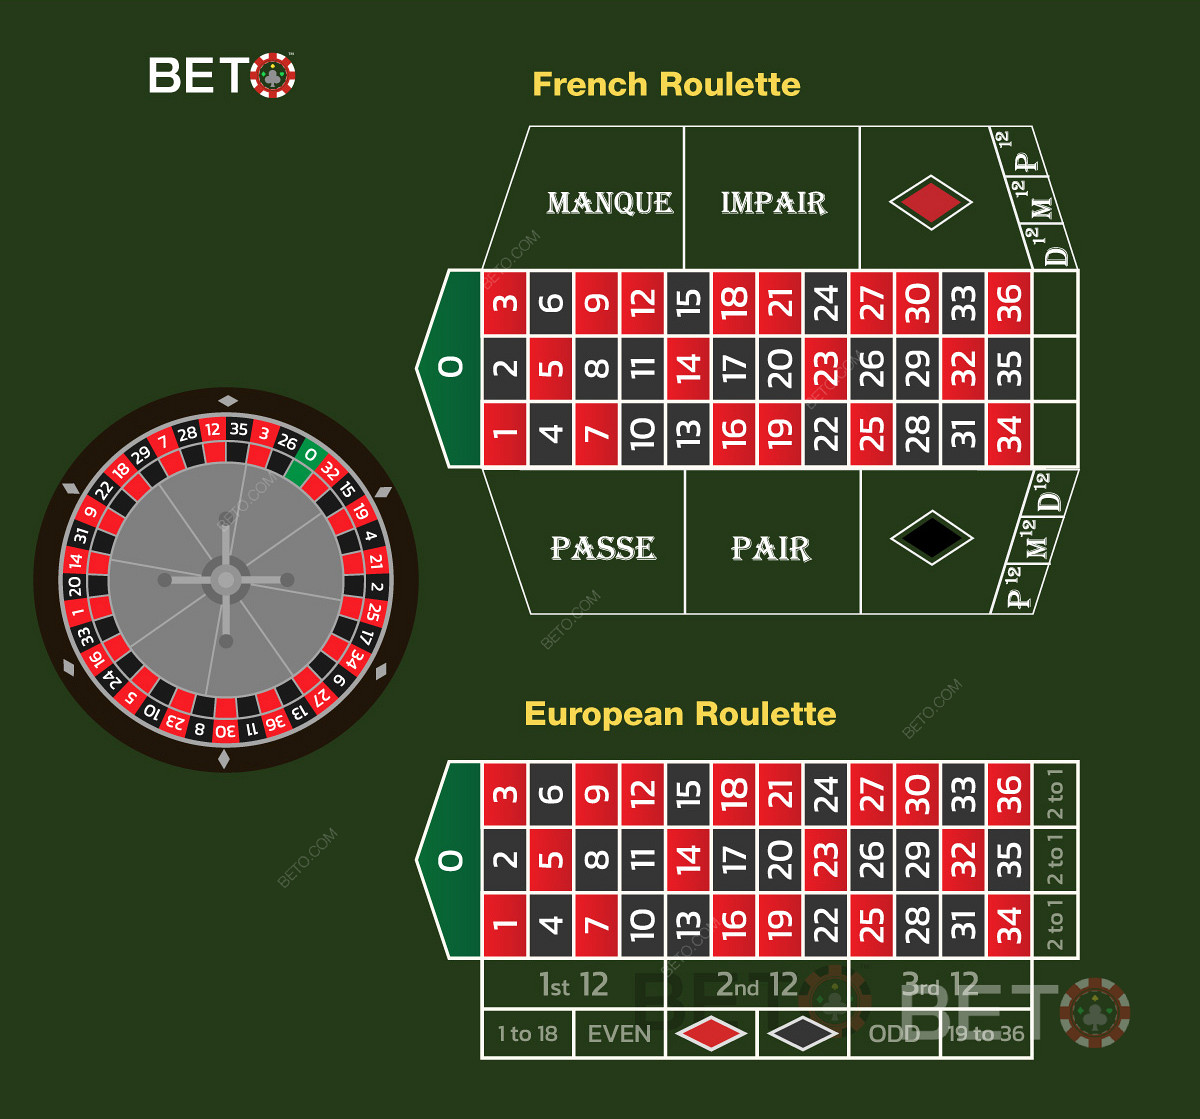 La roulette francese rispetto alla roulette europea